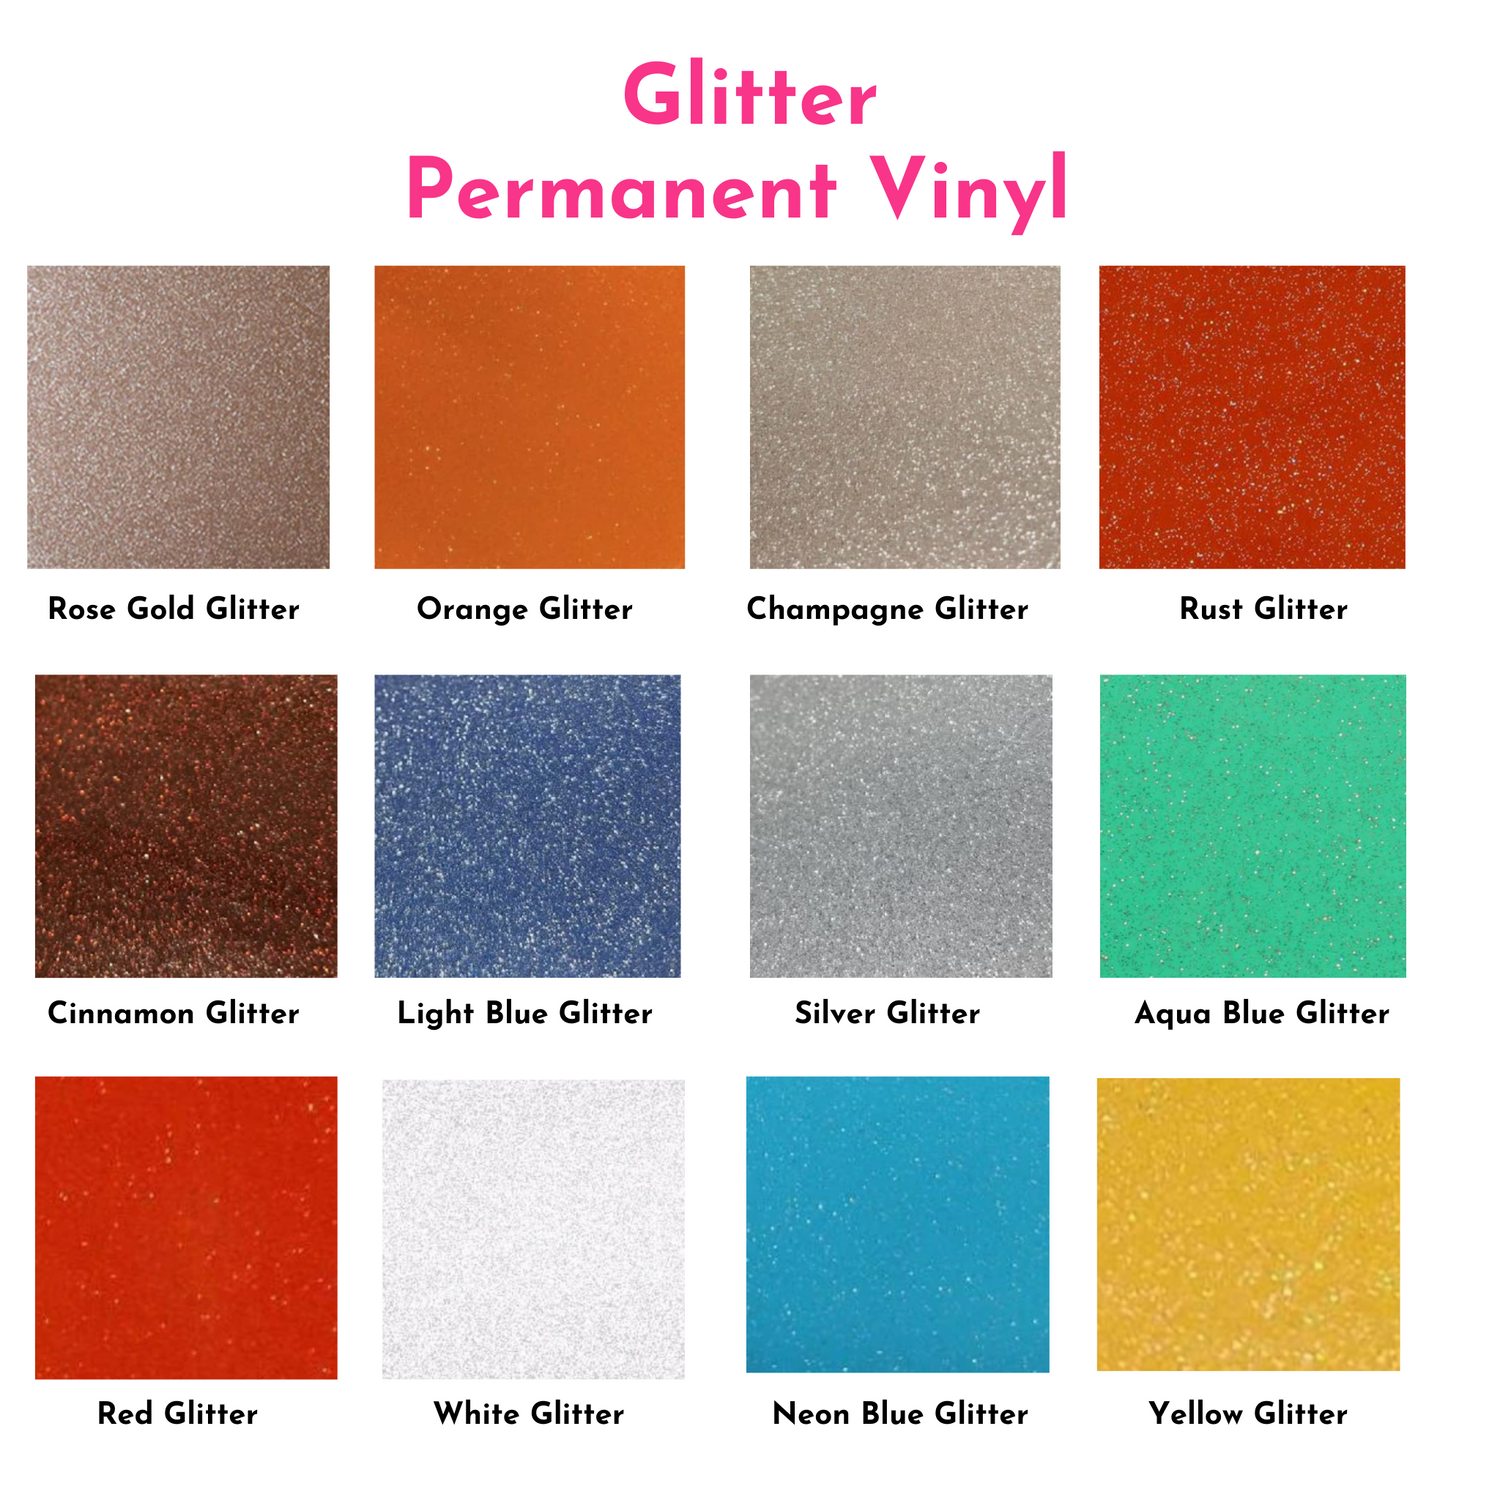 Crafter Depot Assorted Glitter Pack 12x12, Vinyl Glitter 651